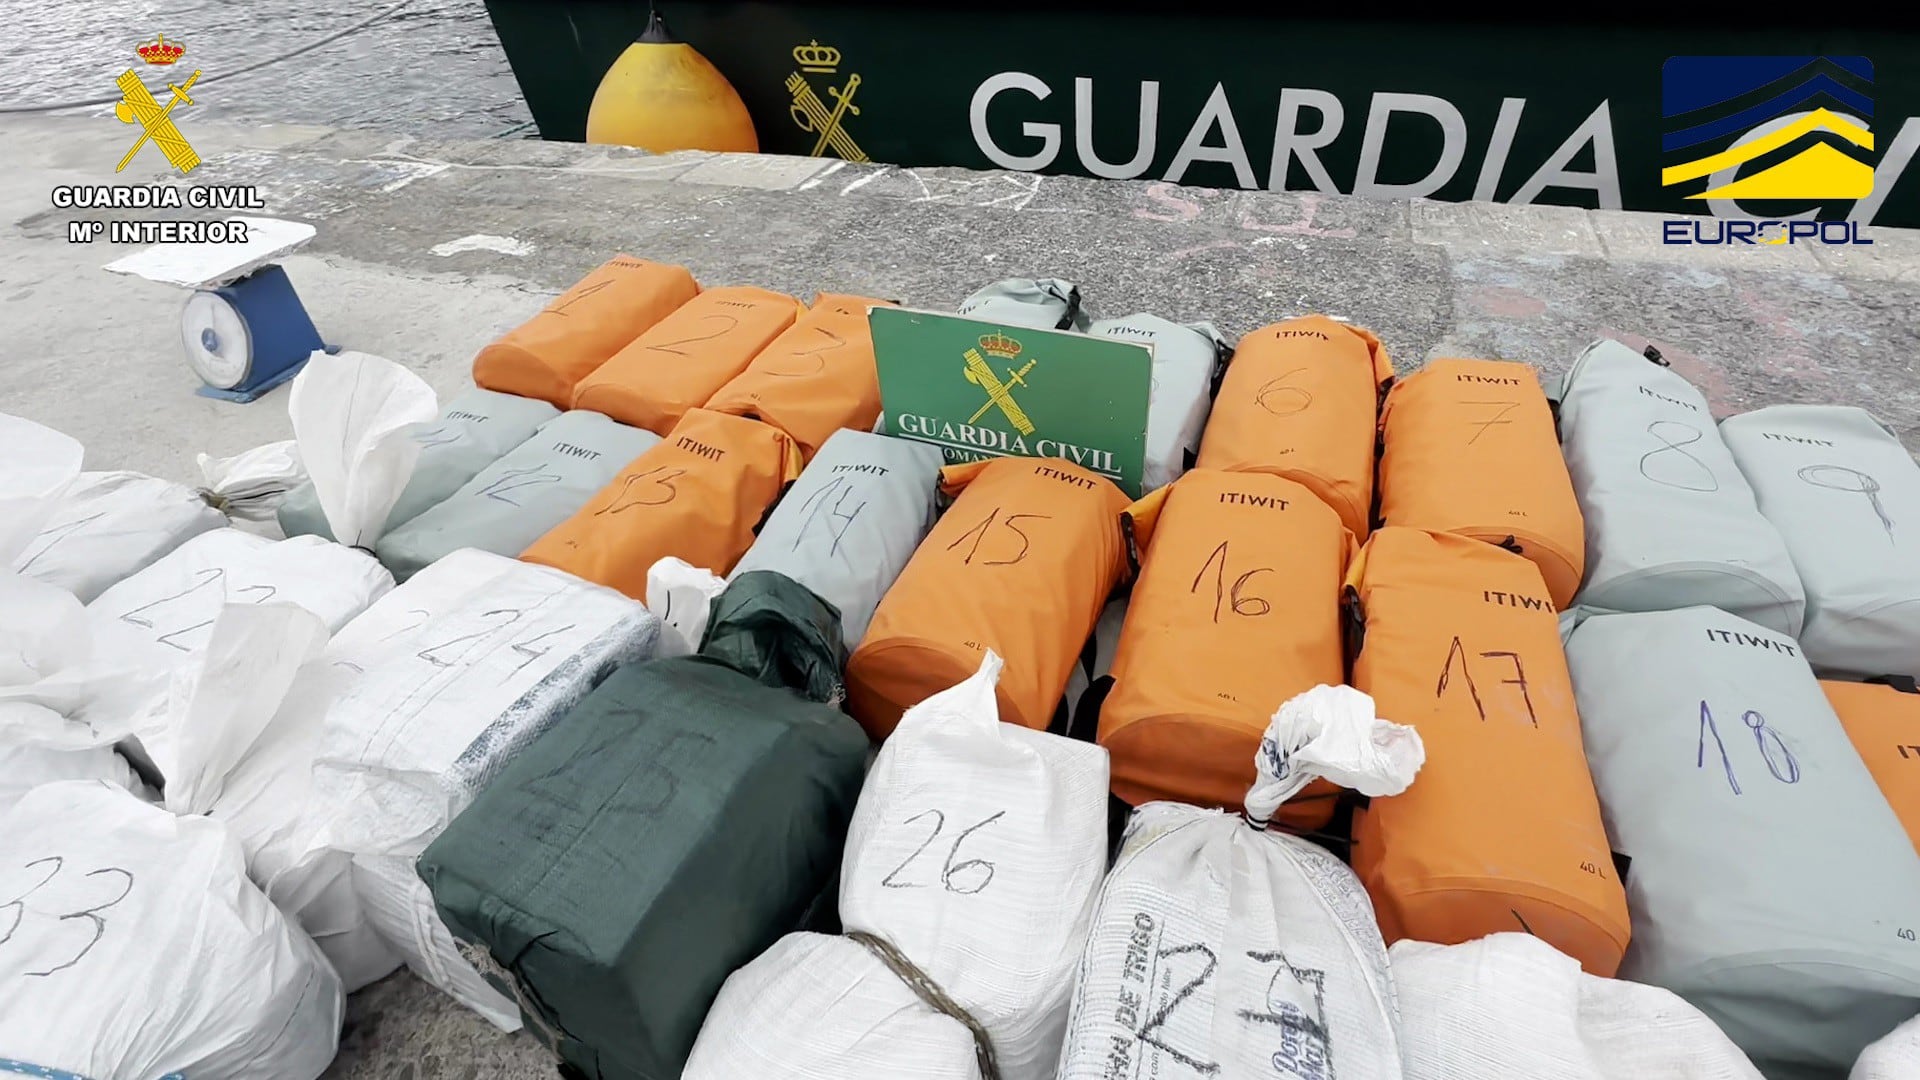 Los bultos que contenían 700 kilos de cocaína intervenidos en la operación Adriática.